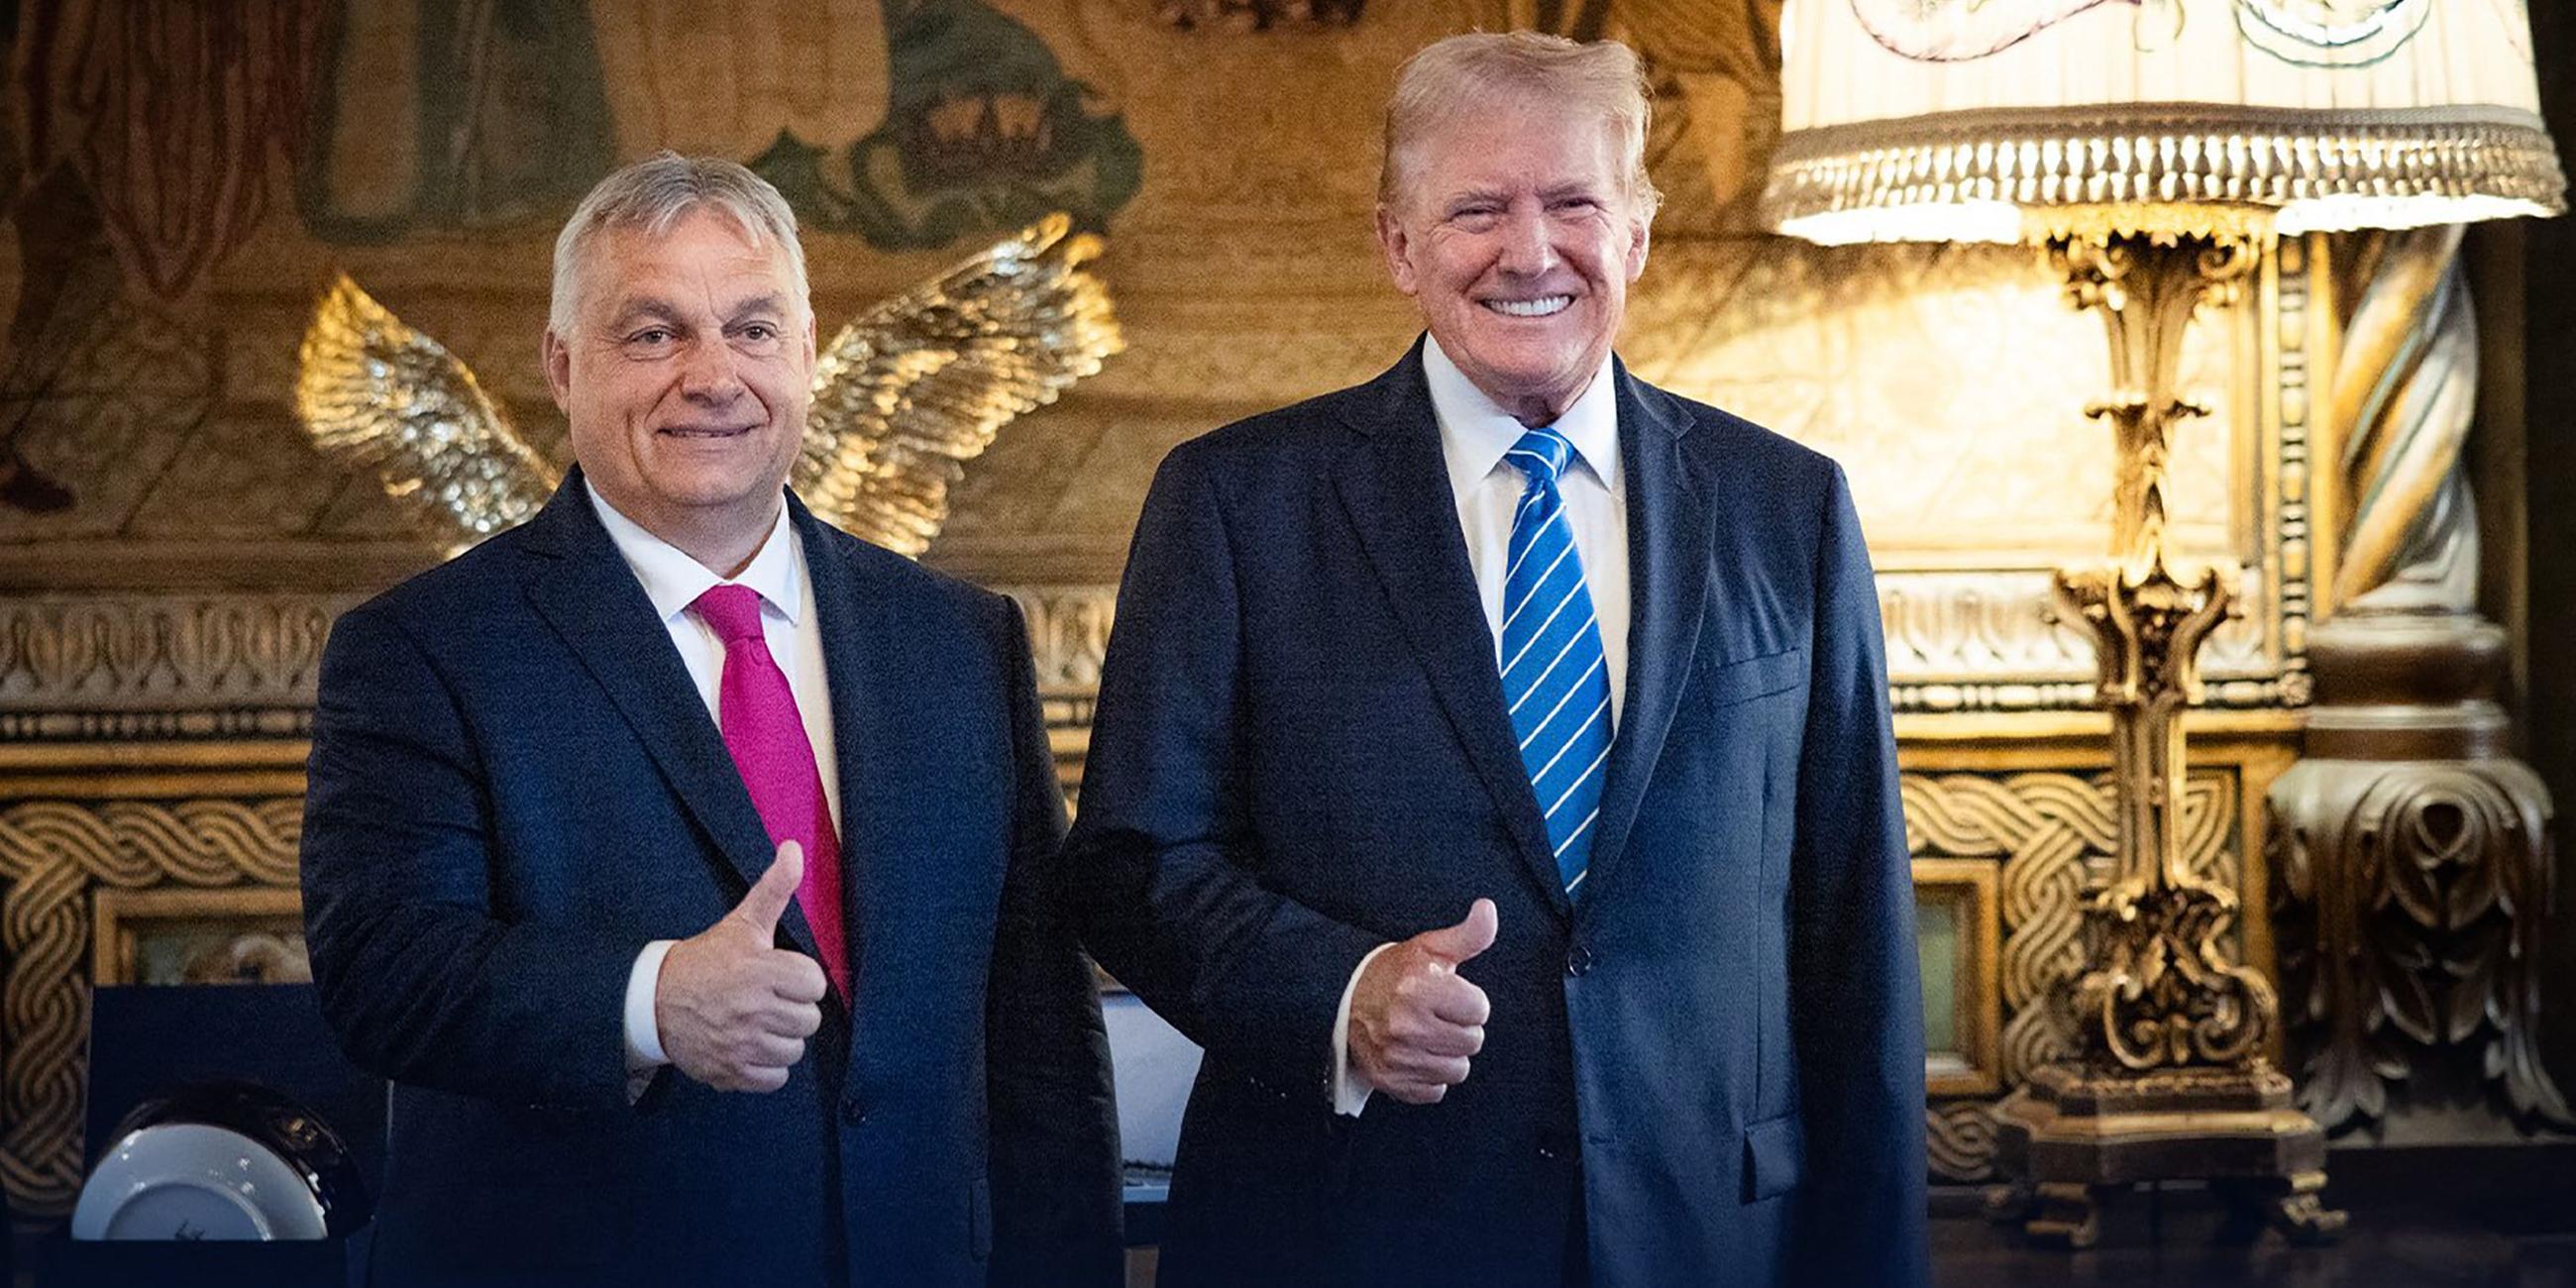 Ungarns nationalistischer Premierminister Viktor Orban flog am 11. Juli nach Florida, um sich nach dem Ende des NATO-Gipfels in Washington mit dem ehemaligen US-Präsidenten Donald Trump zu treffen. 